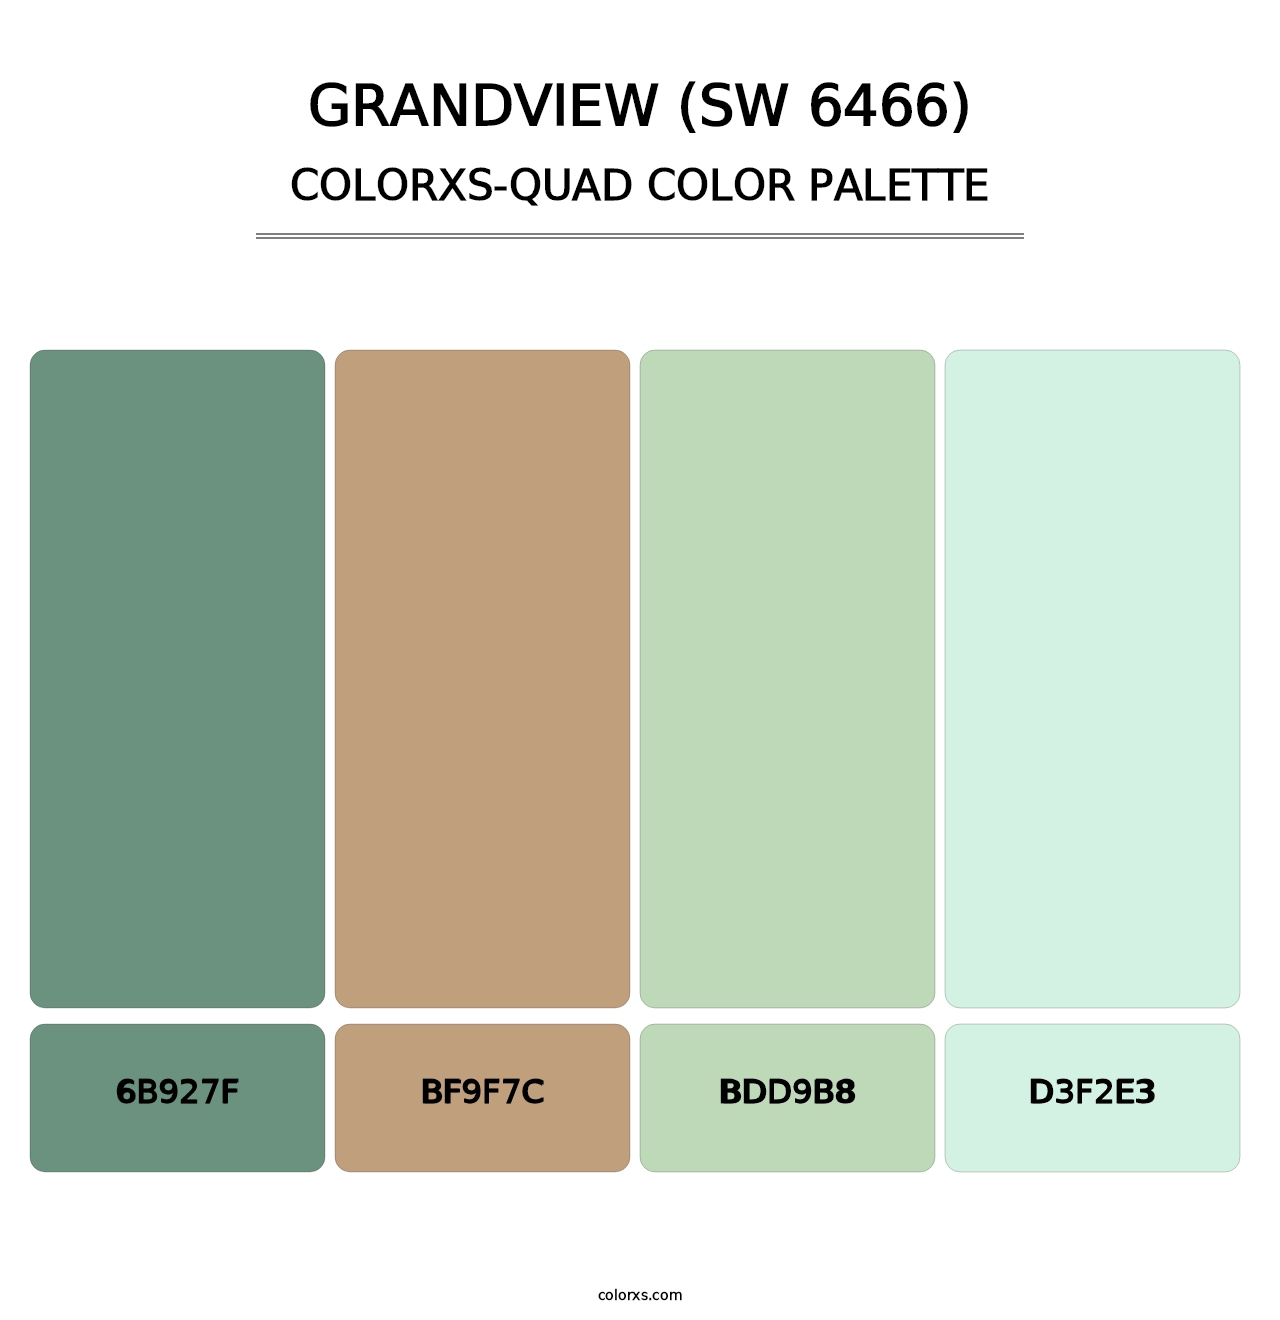 Grandview (SW 6466) - Colorxs Quad Palette